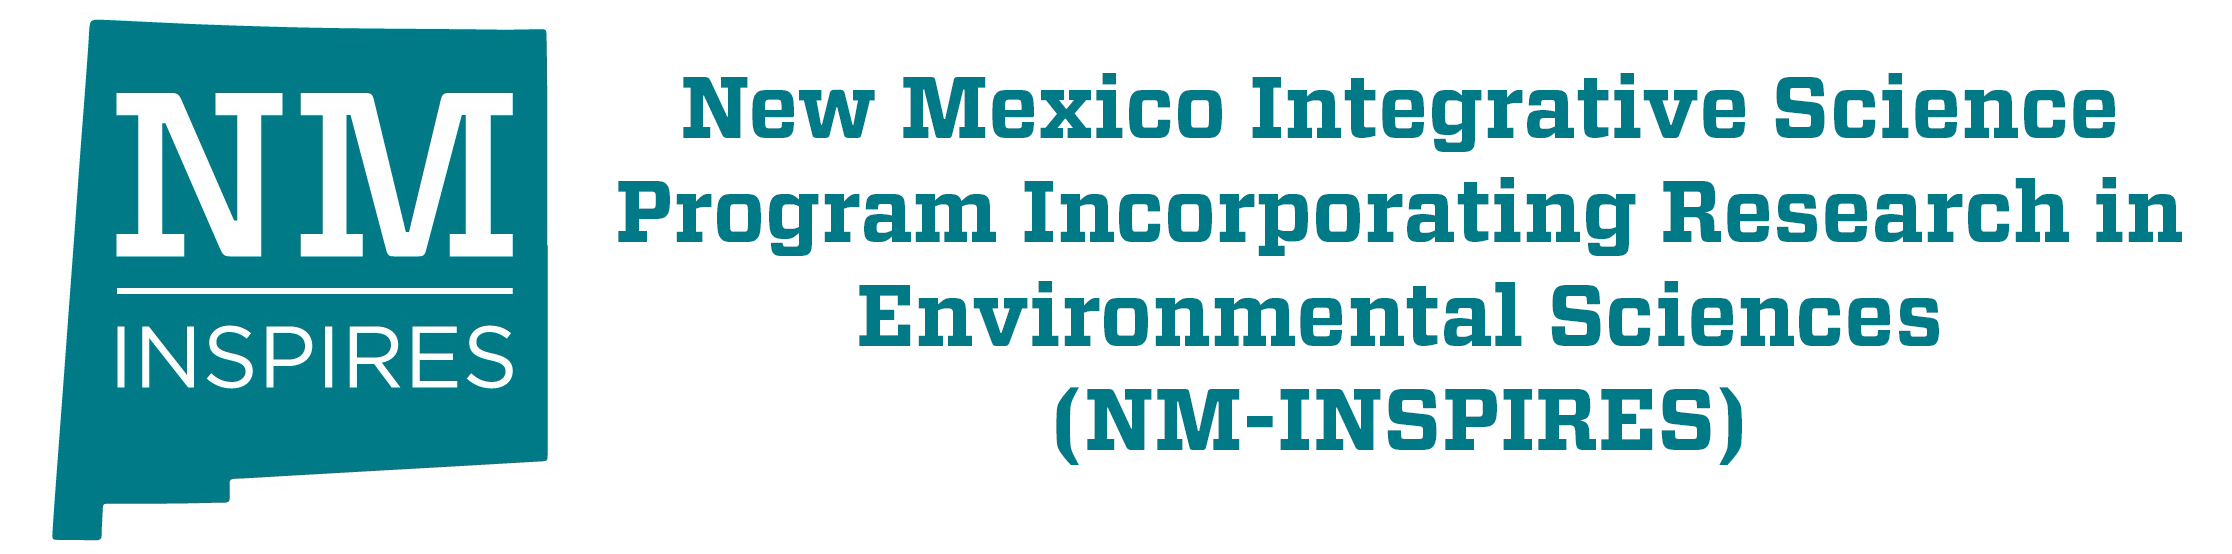 पर्यावरण विज्ञान में अनुसंधान को शामिल करते हुए न्यू मैक्सिको एकीकृत विज्ञान कार्यक्रम (NM-INSPIRES)